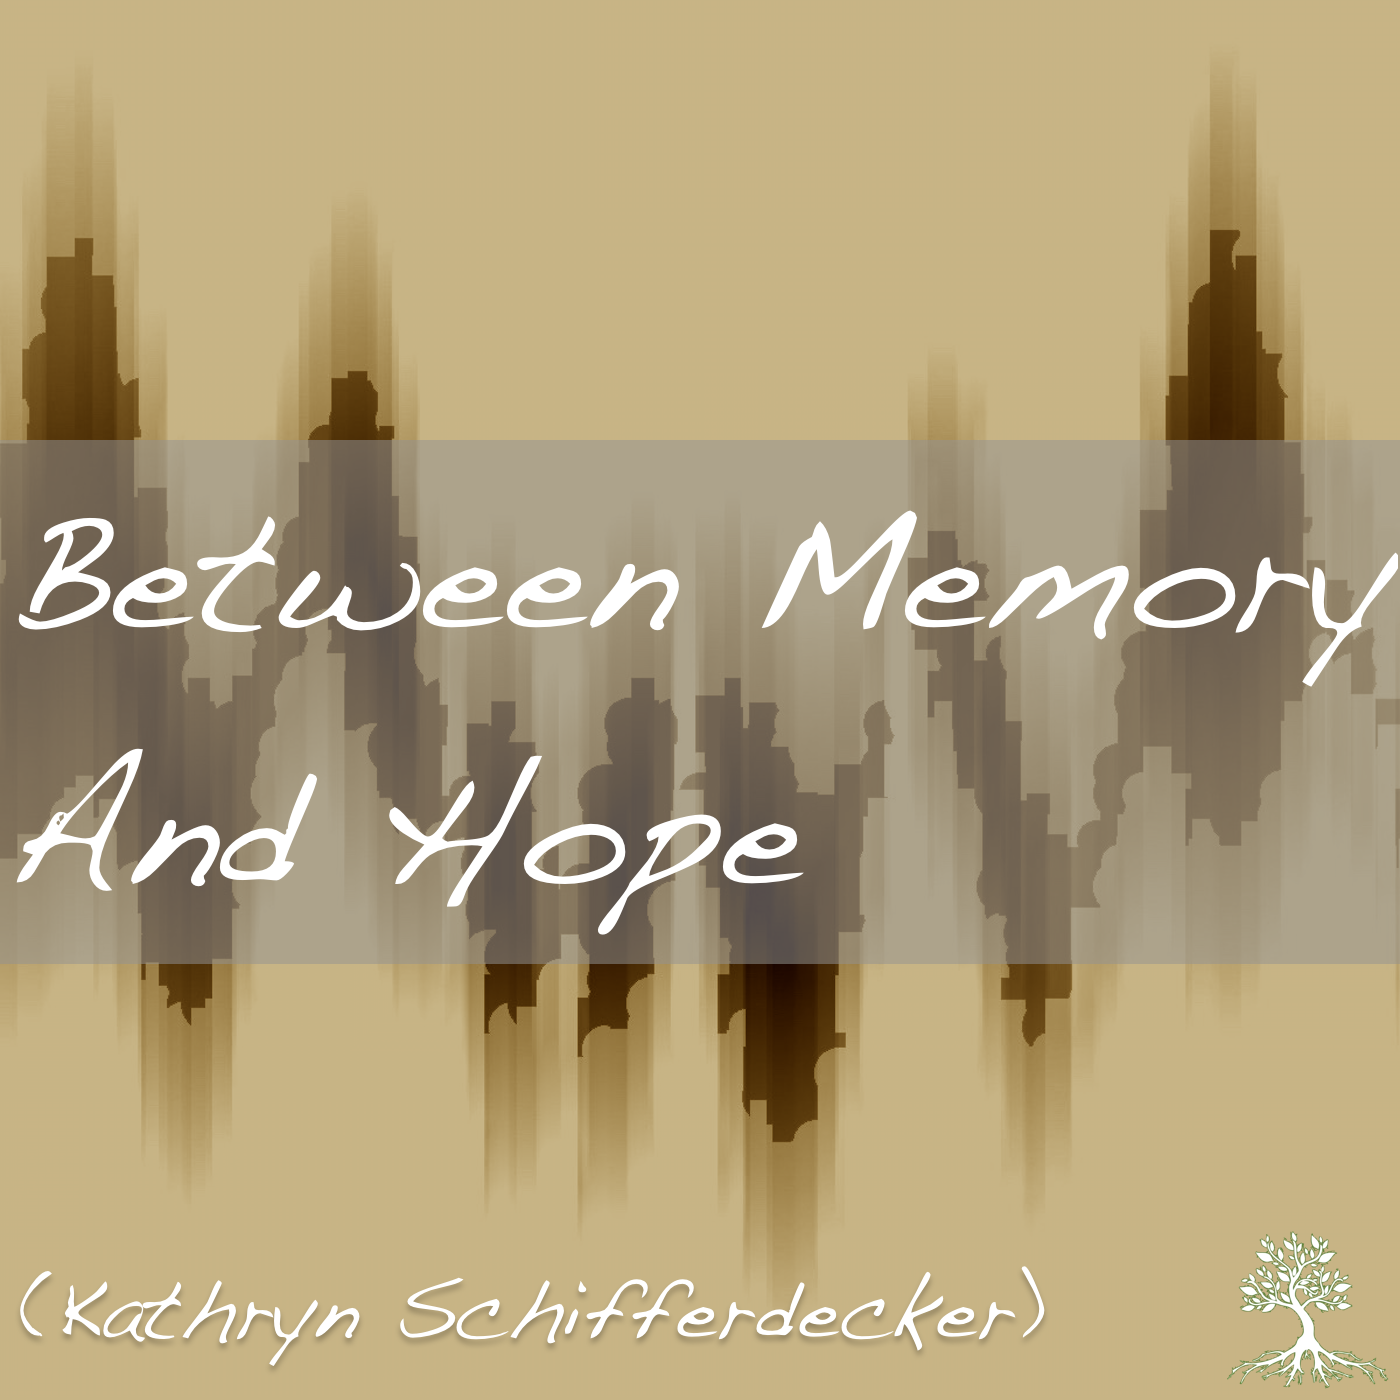 Between Memory And Hope (Kathryn Schifferdecker 8/16/17)